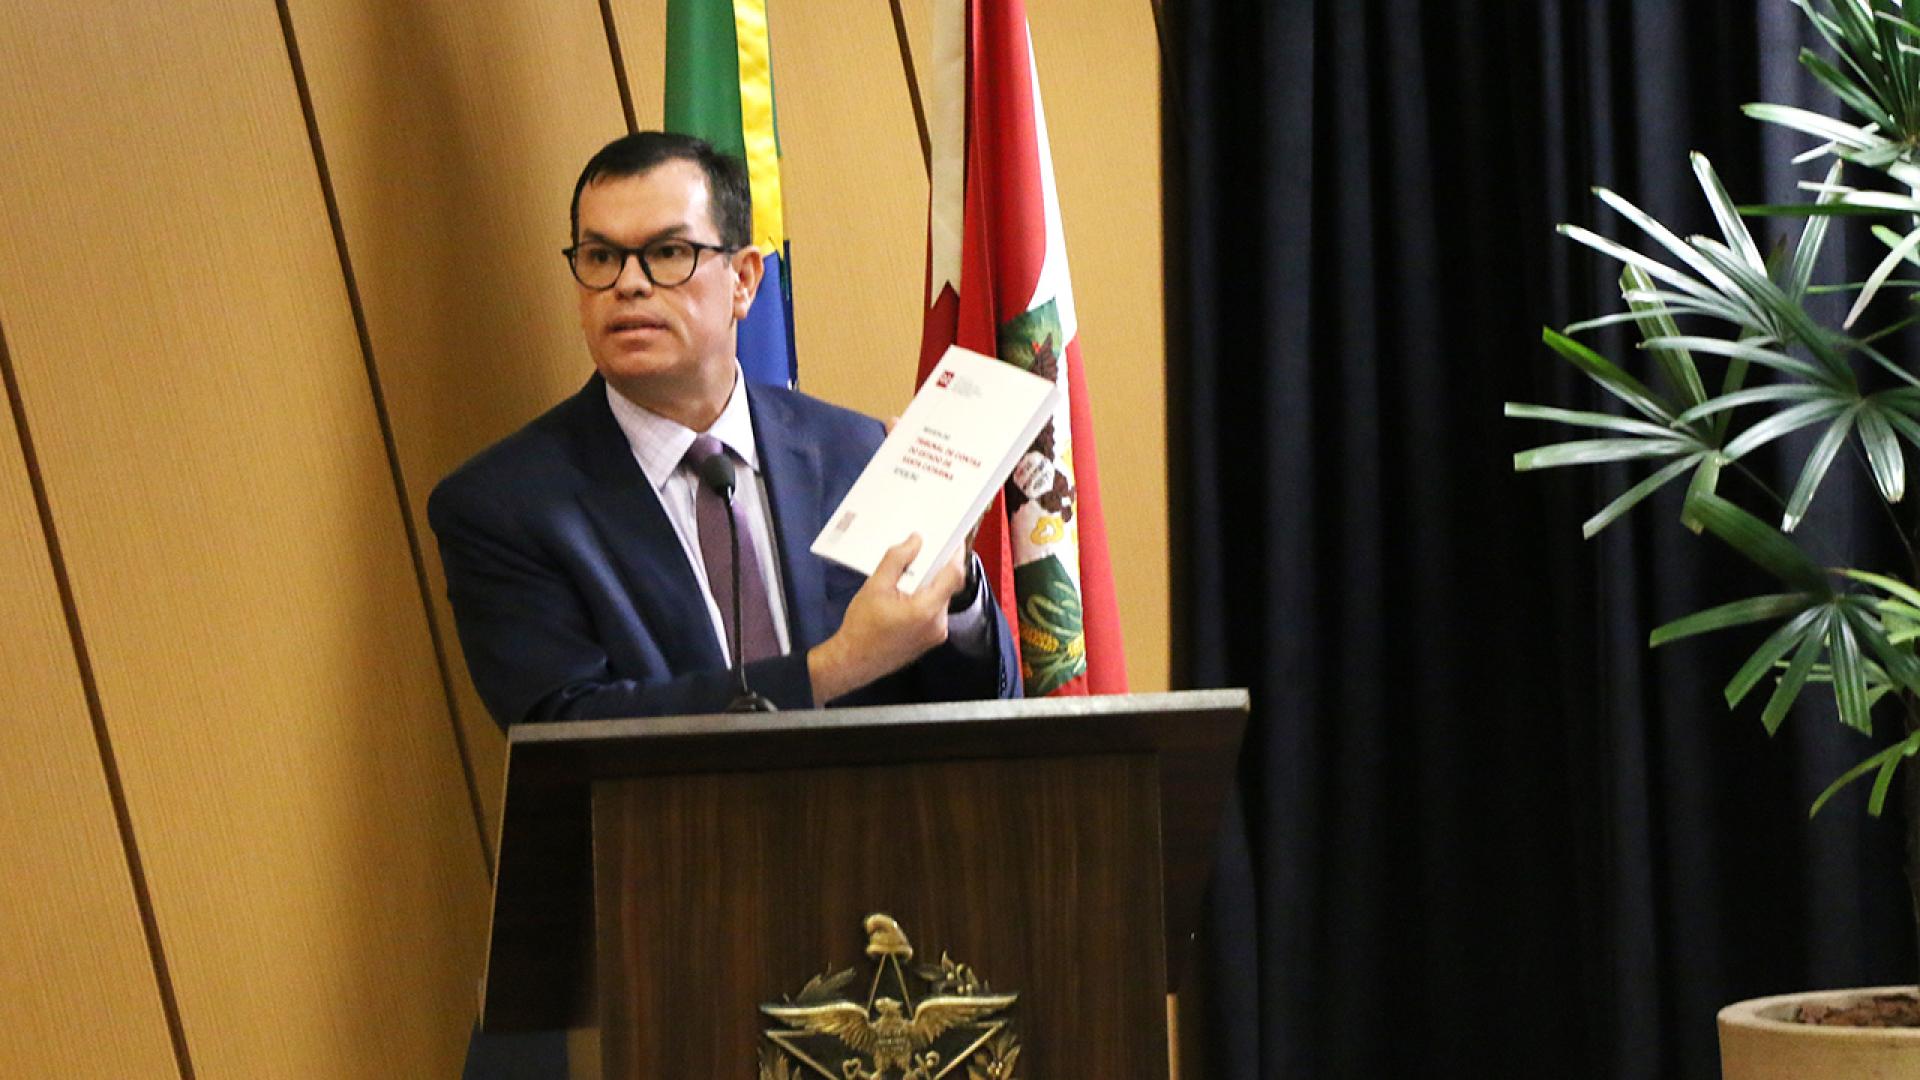 Foto do conselheiro Adircélio de Moraes Ferreira Júnior, presidente do Conselho Editorial da Revista do TCE/SC, no púlpito, mostrando a capa do periódico.